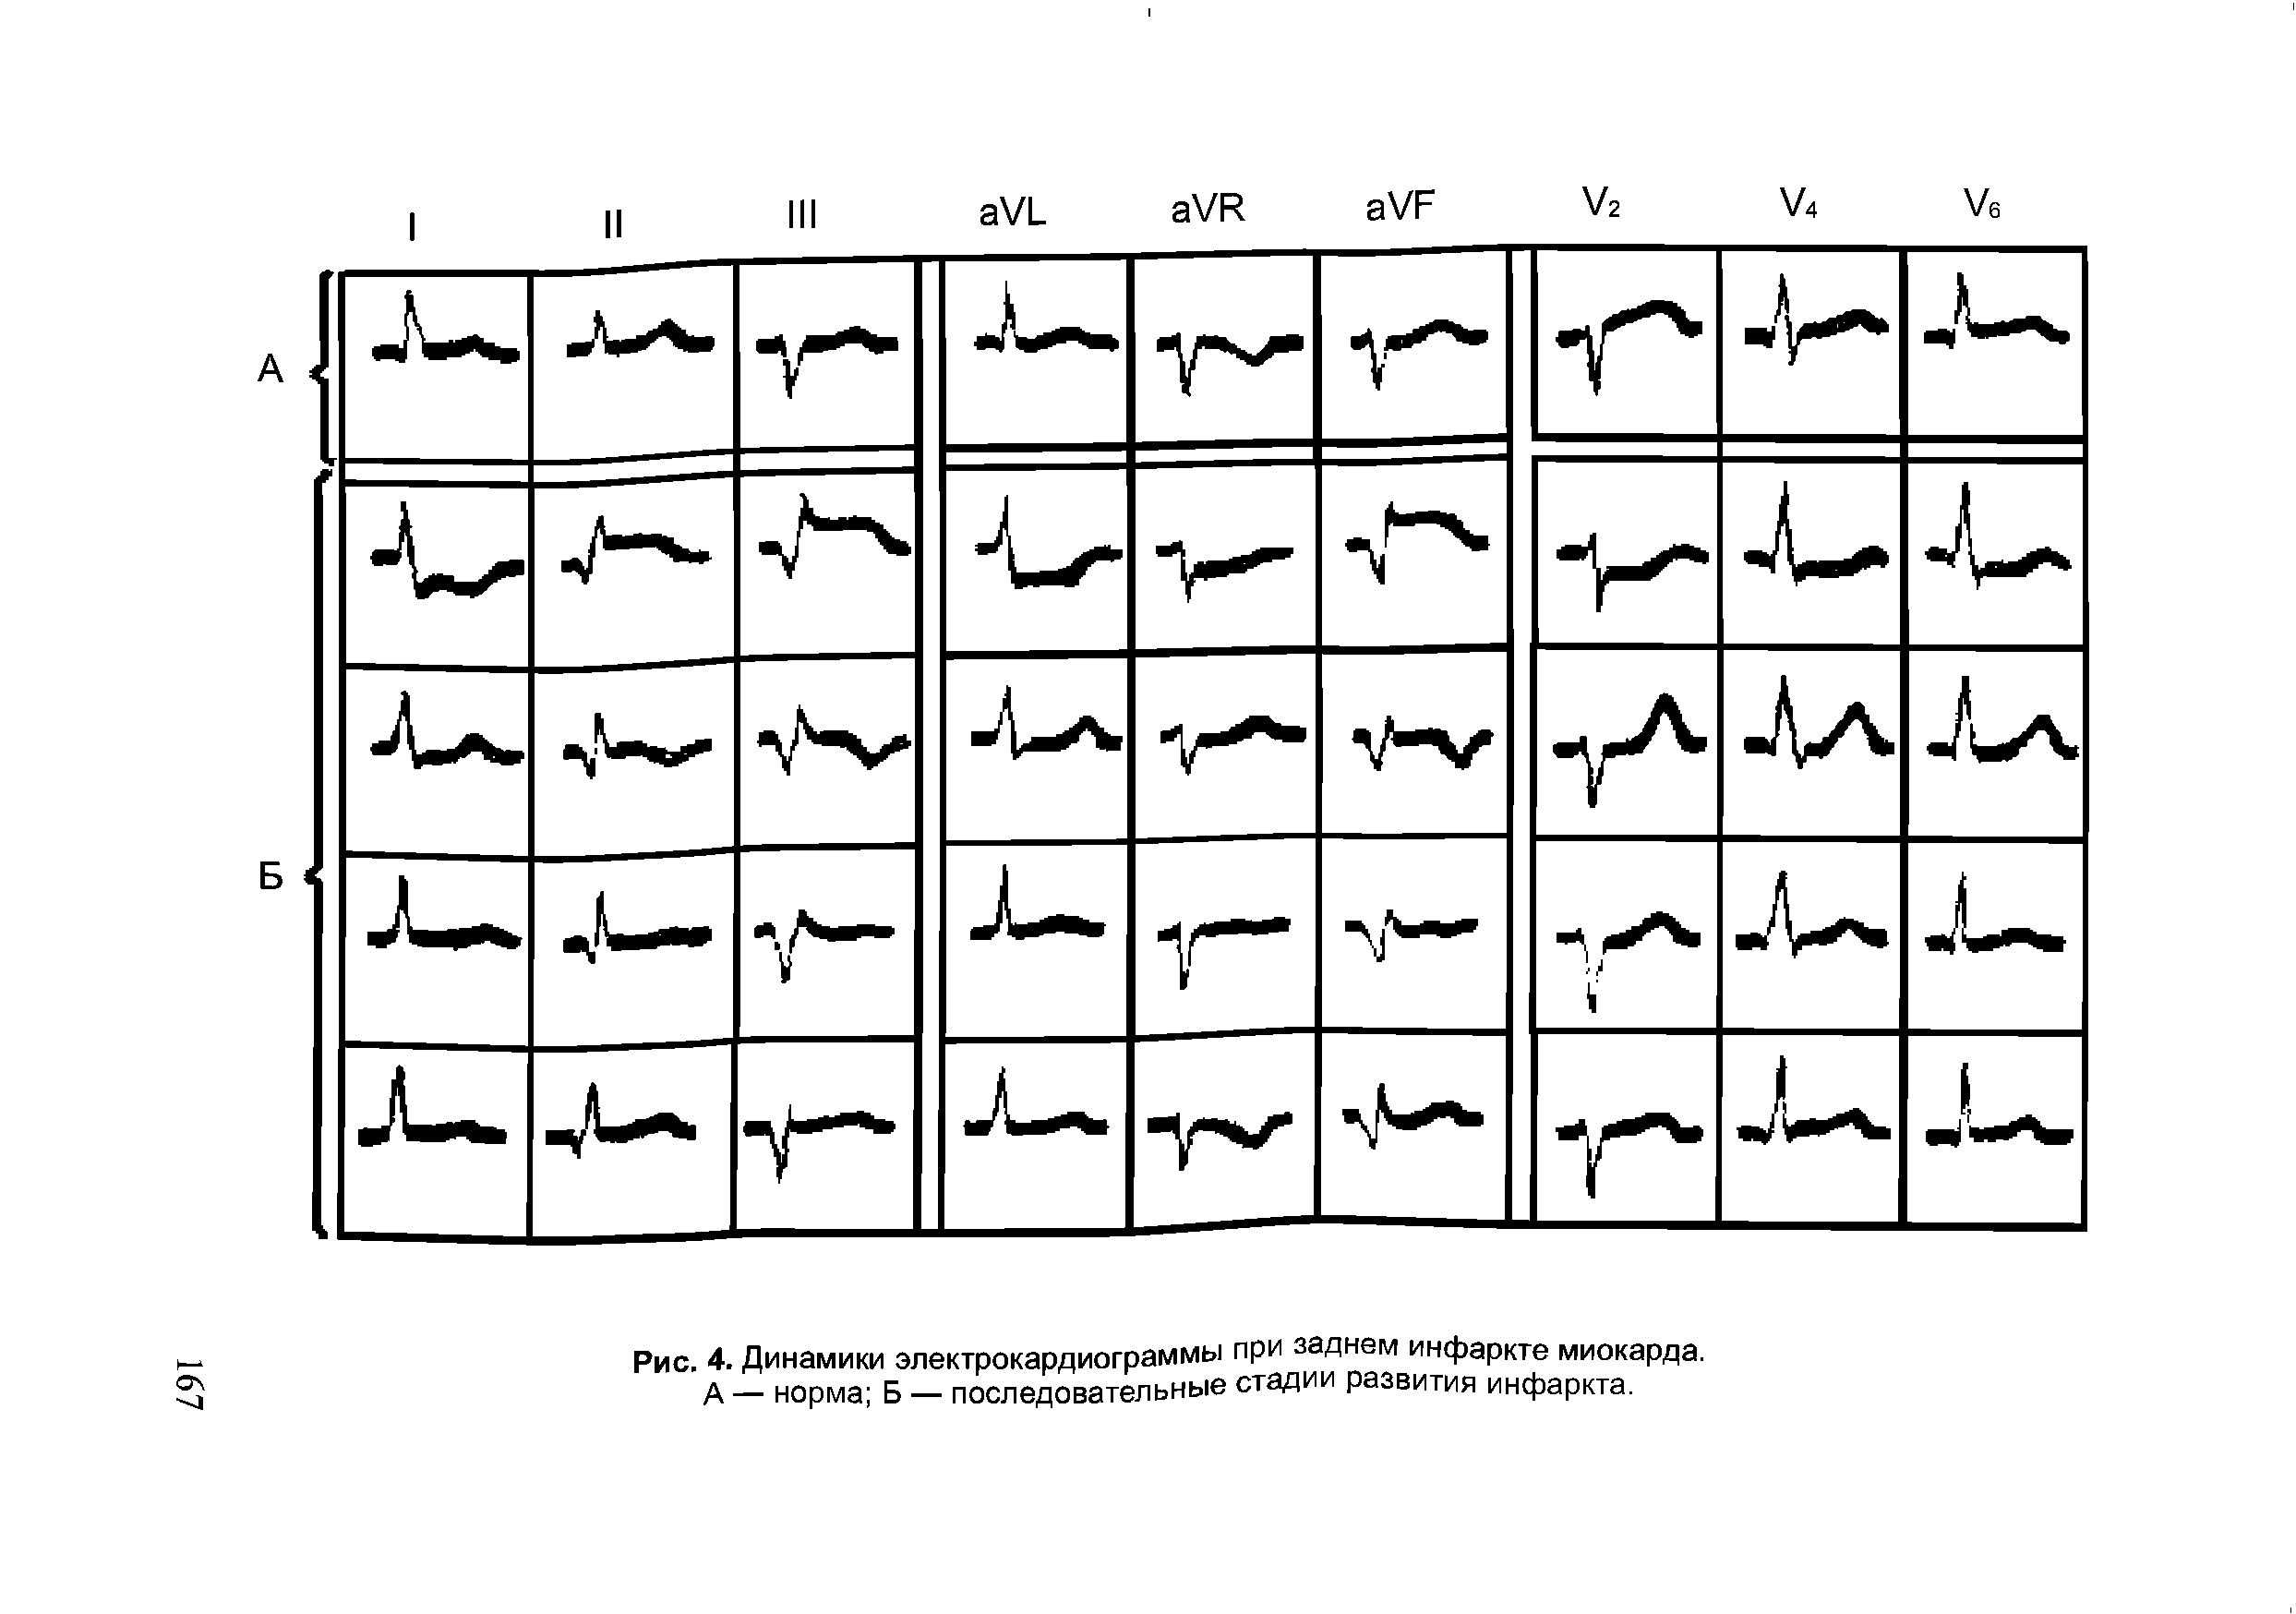 Рис. 4. Динамики электрокардиограммы при заднем инфаркте миокарда. А — норма Б — последовательные стадии развития инфаркта.